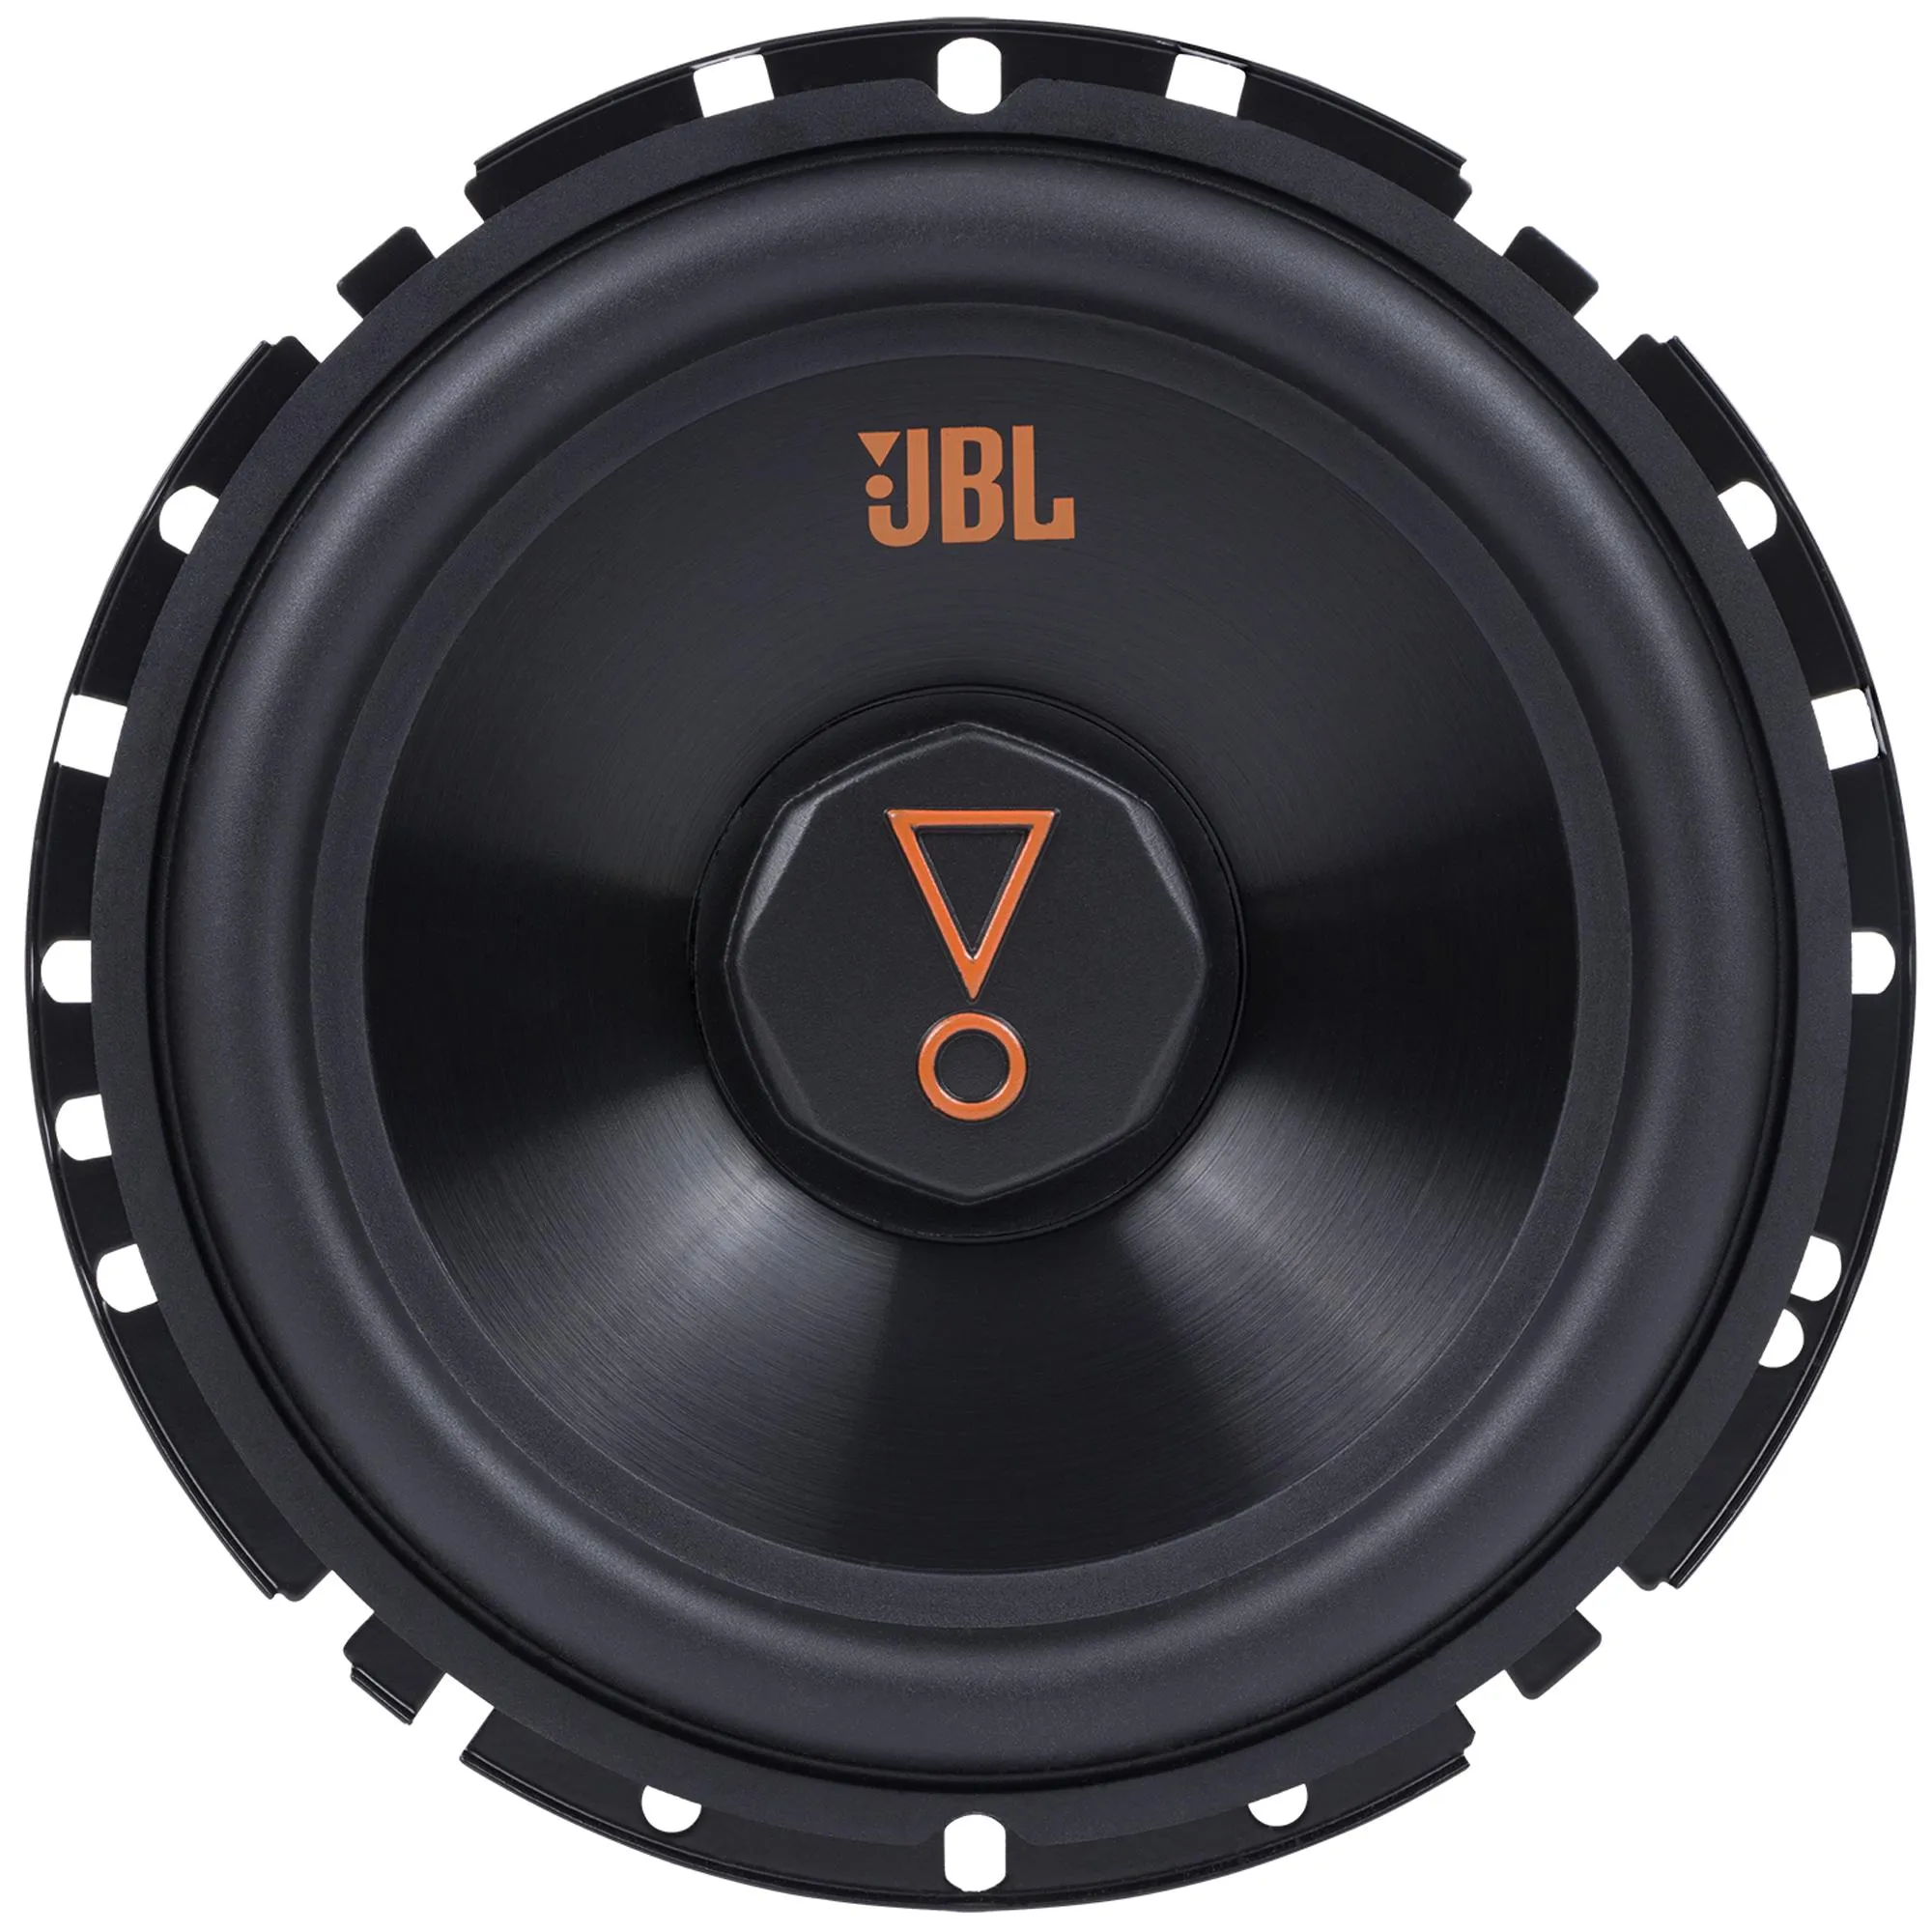 Alto-Falante JBL Multisystem 62VMS80 (PAR) por 376,99 à vista no boleto/pix ou parcele em até 10x sem juros. Compre na loja Mundomax!